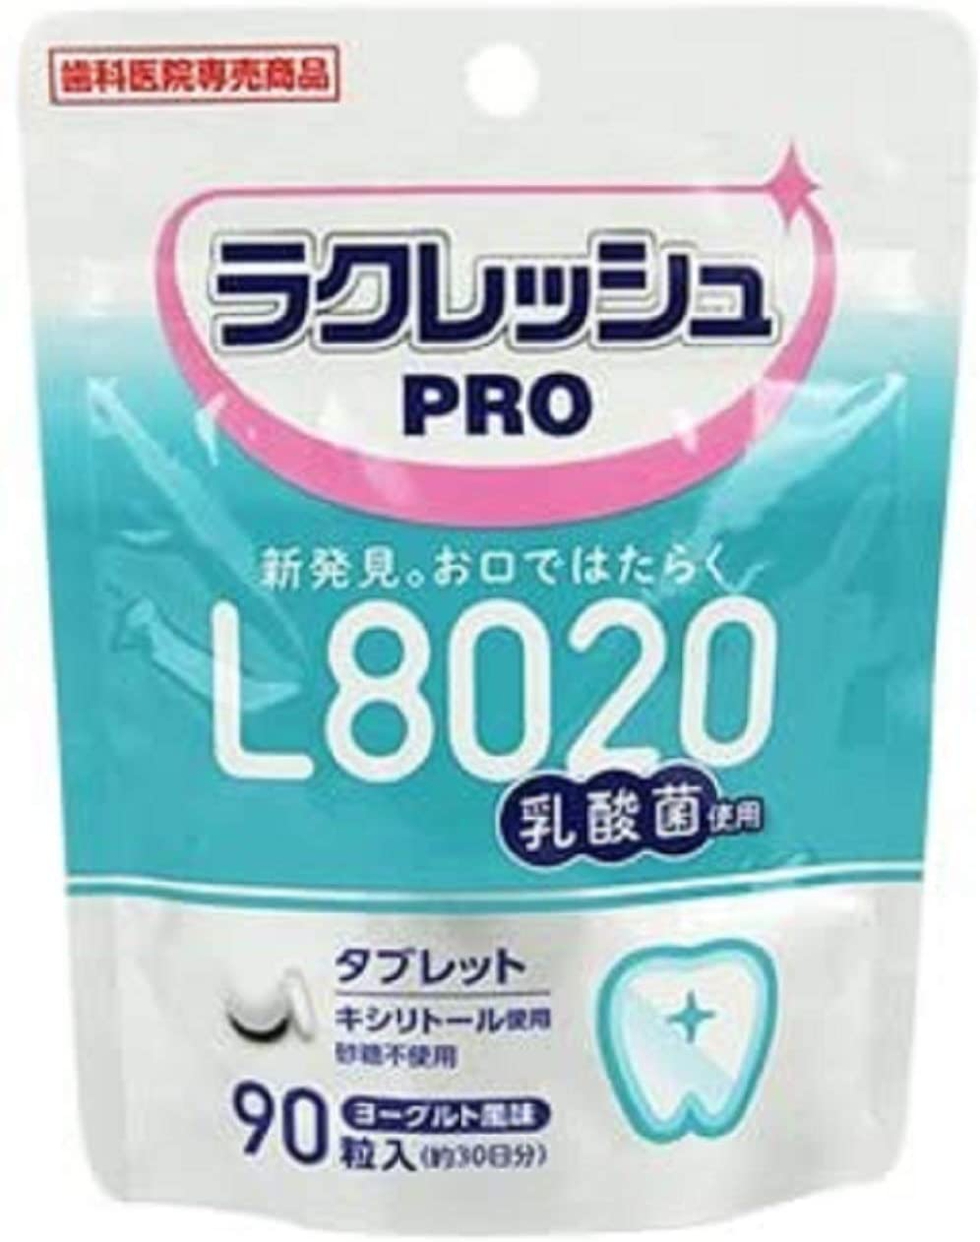 YOSHIDA(ヨシダ) L8020乳酸菌 ラクレッシュPRO タブレット